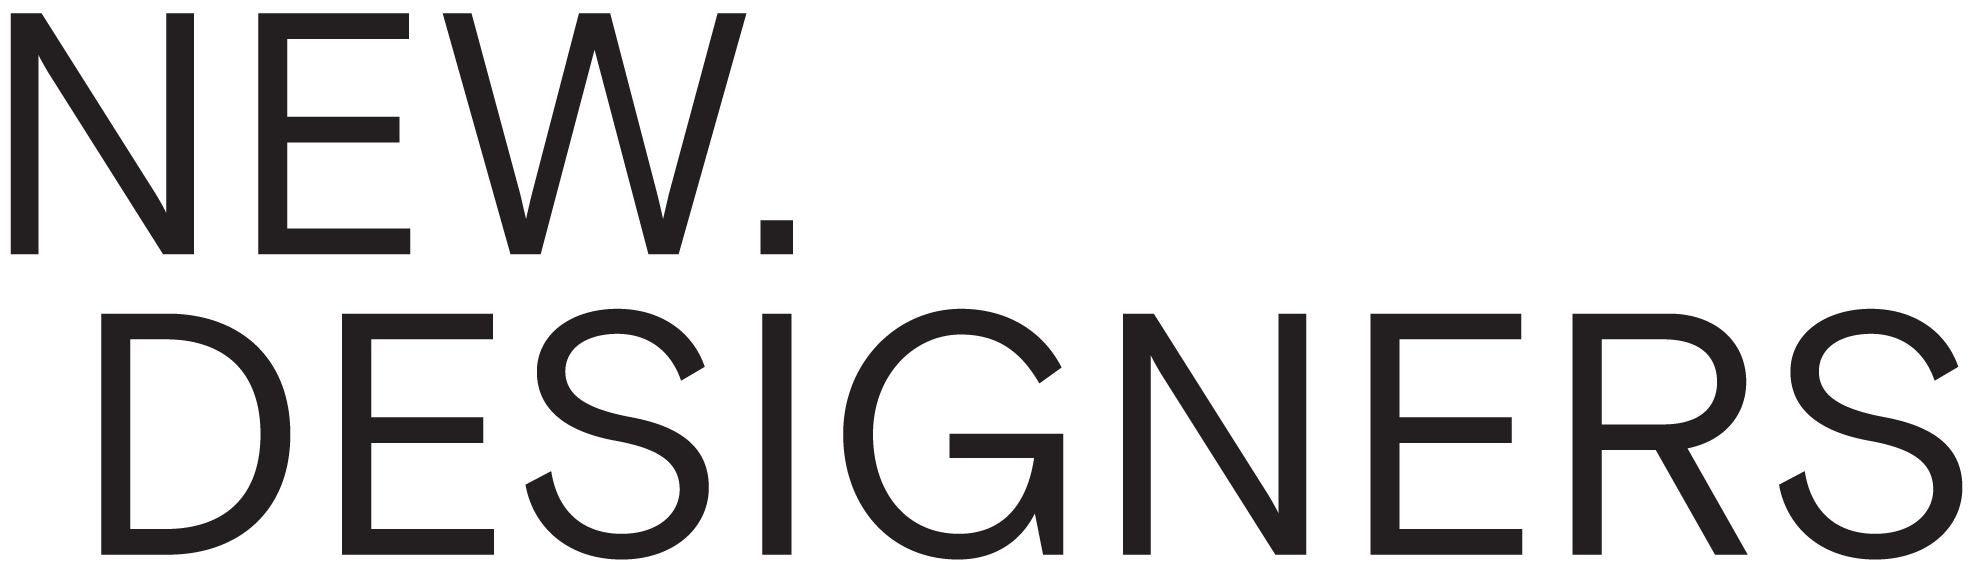 Google 2018 Conceptual Logo - Awards & Associate Prizes - New Designers